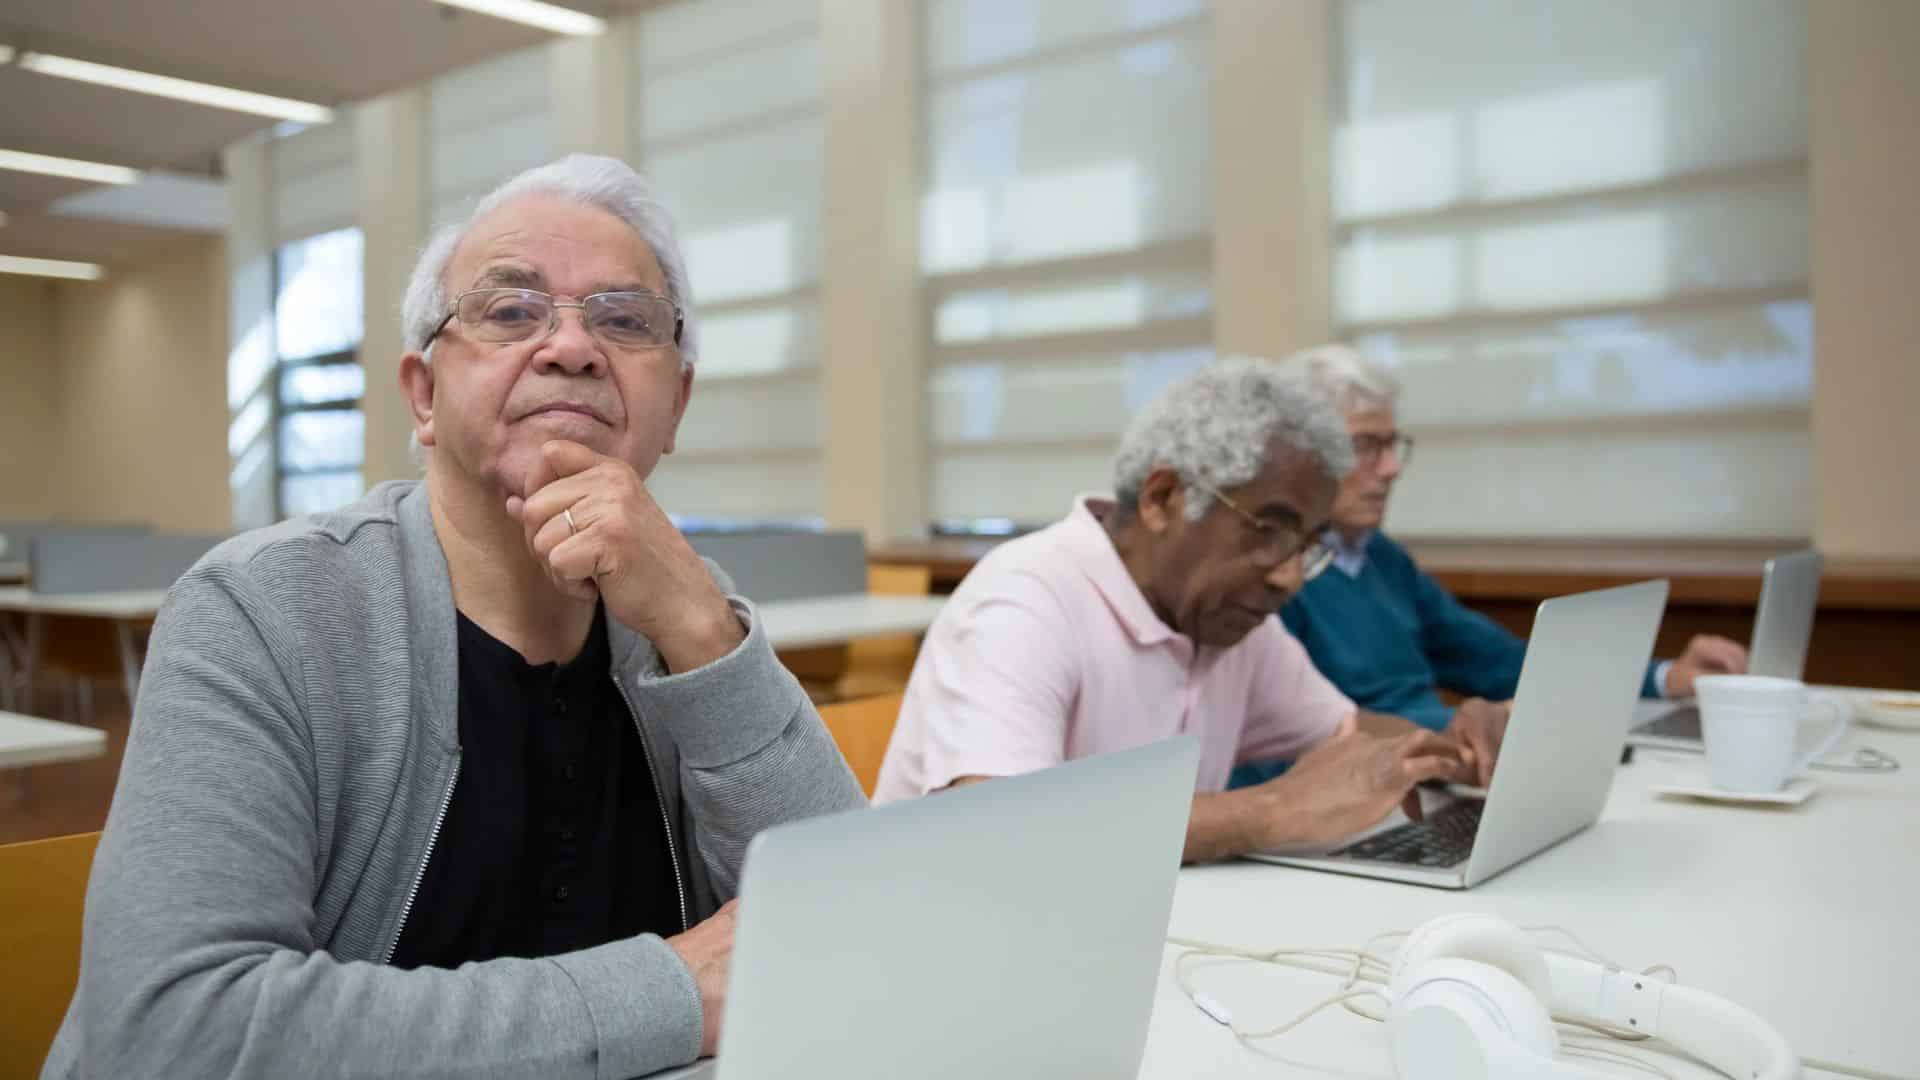 Hinzuverdienst zur Rente: Rentner haben mehr vom Leben – wenn sie arbeiten?!